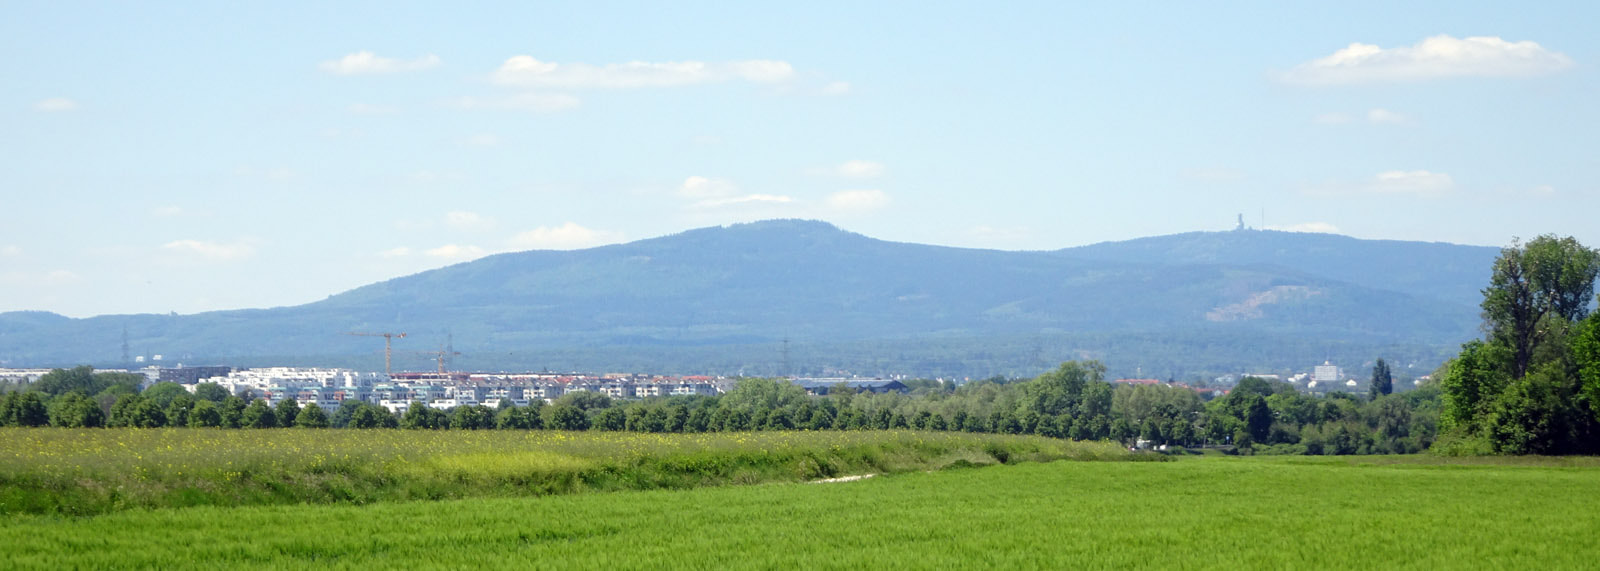 Blick über Riedberg auf den Taunus